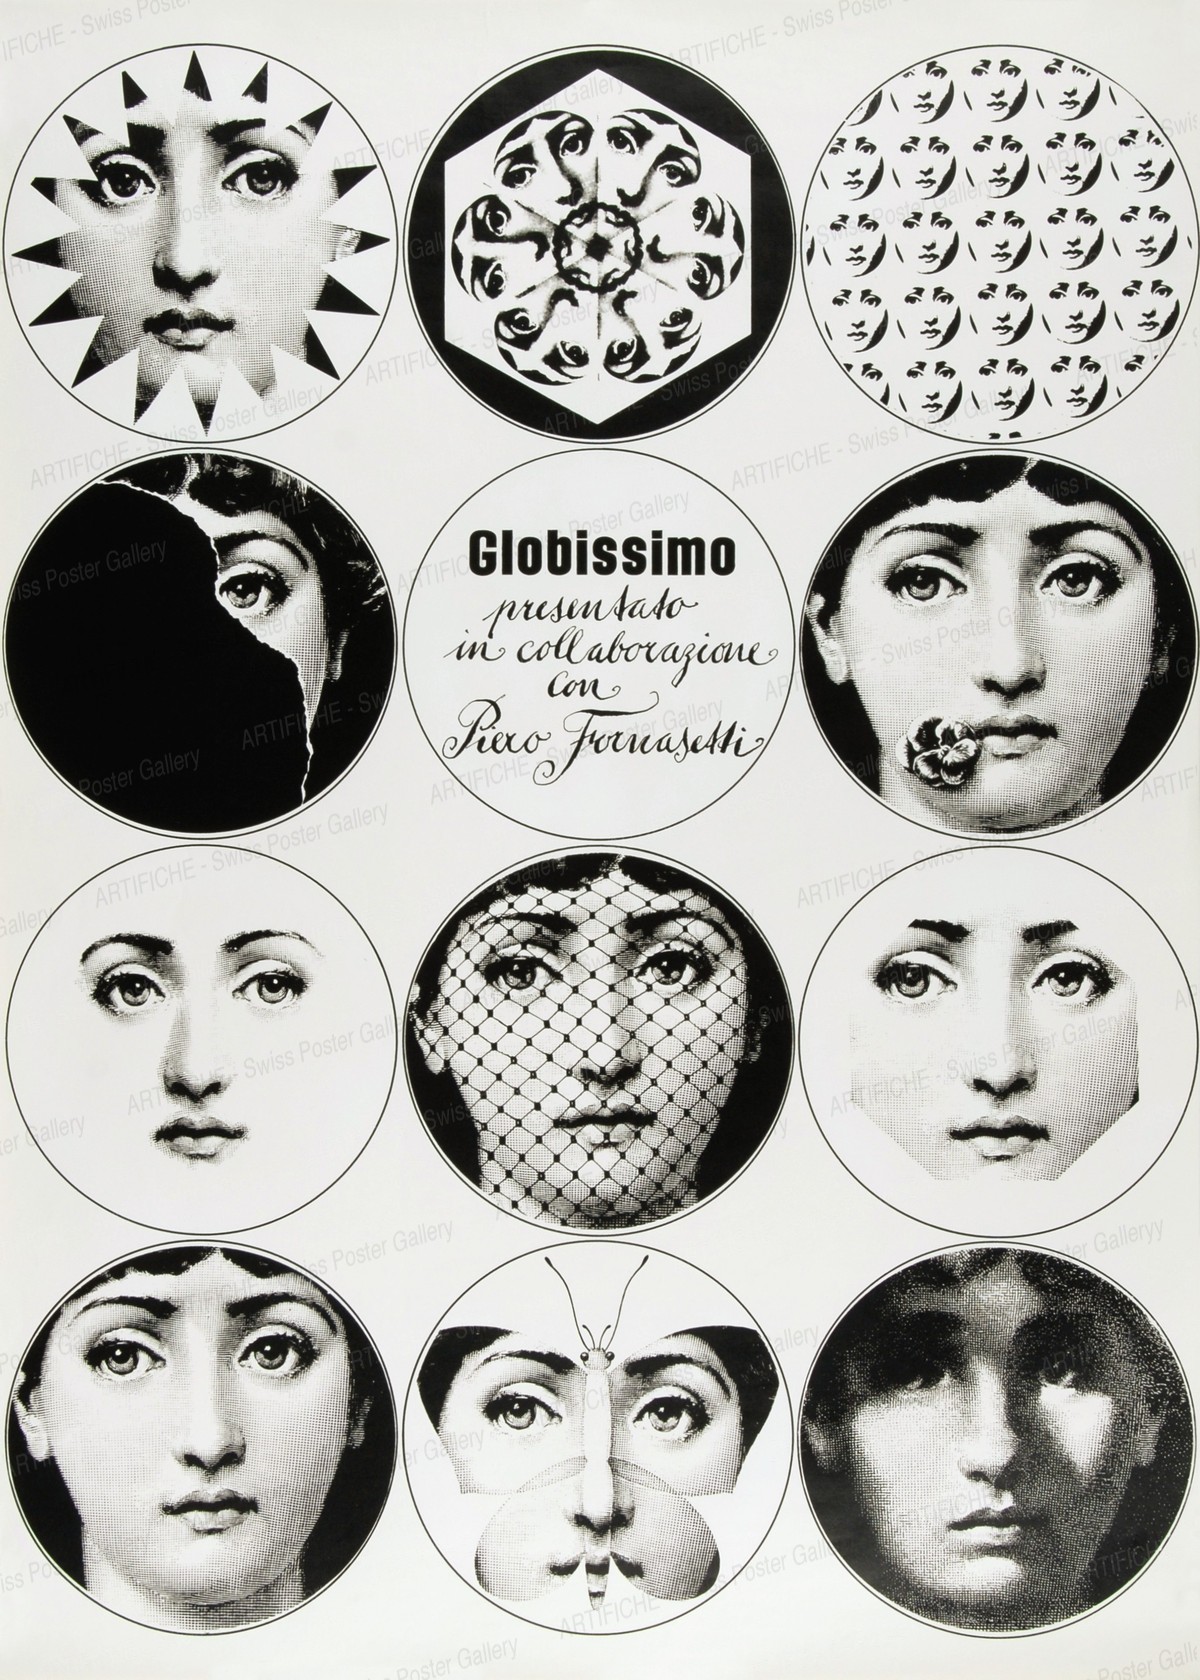 Globissimo – presented in collaboration with Piero Fornasetti, Piero Fornasetti